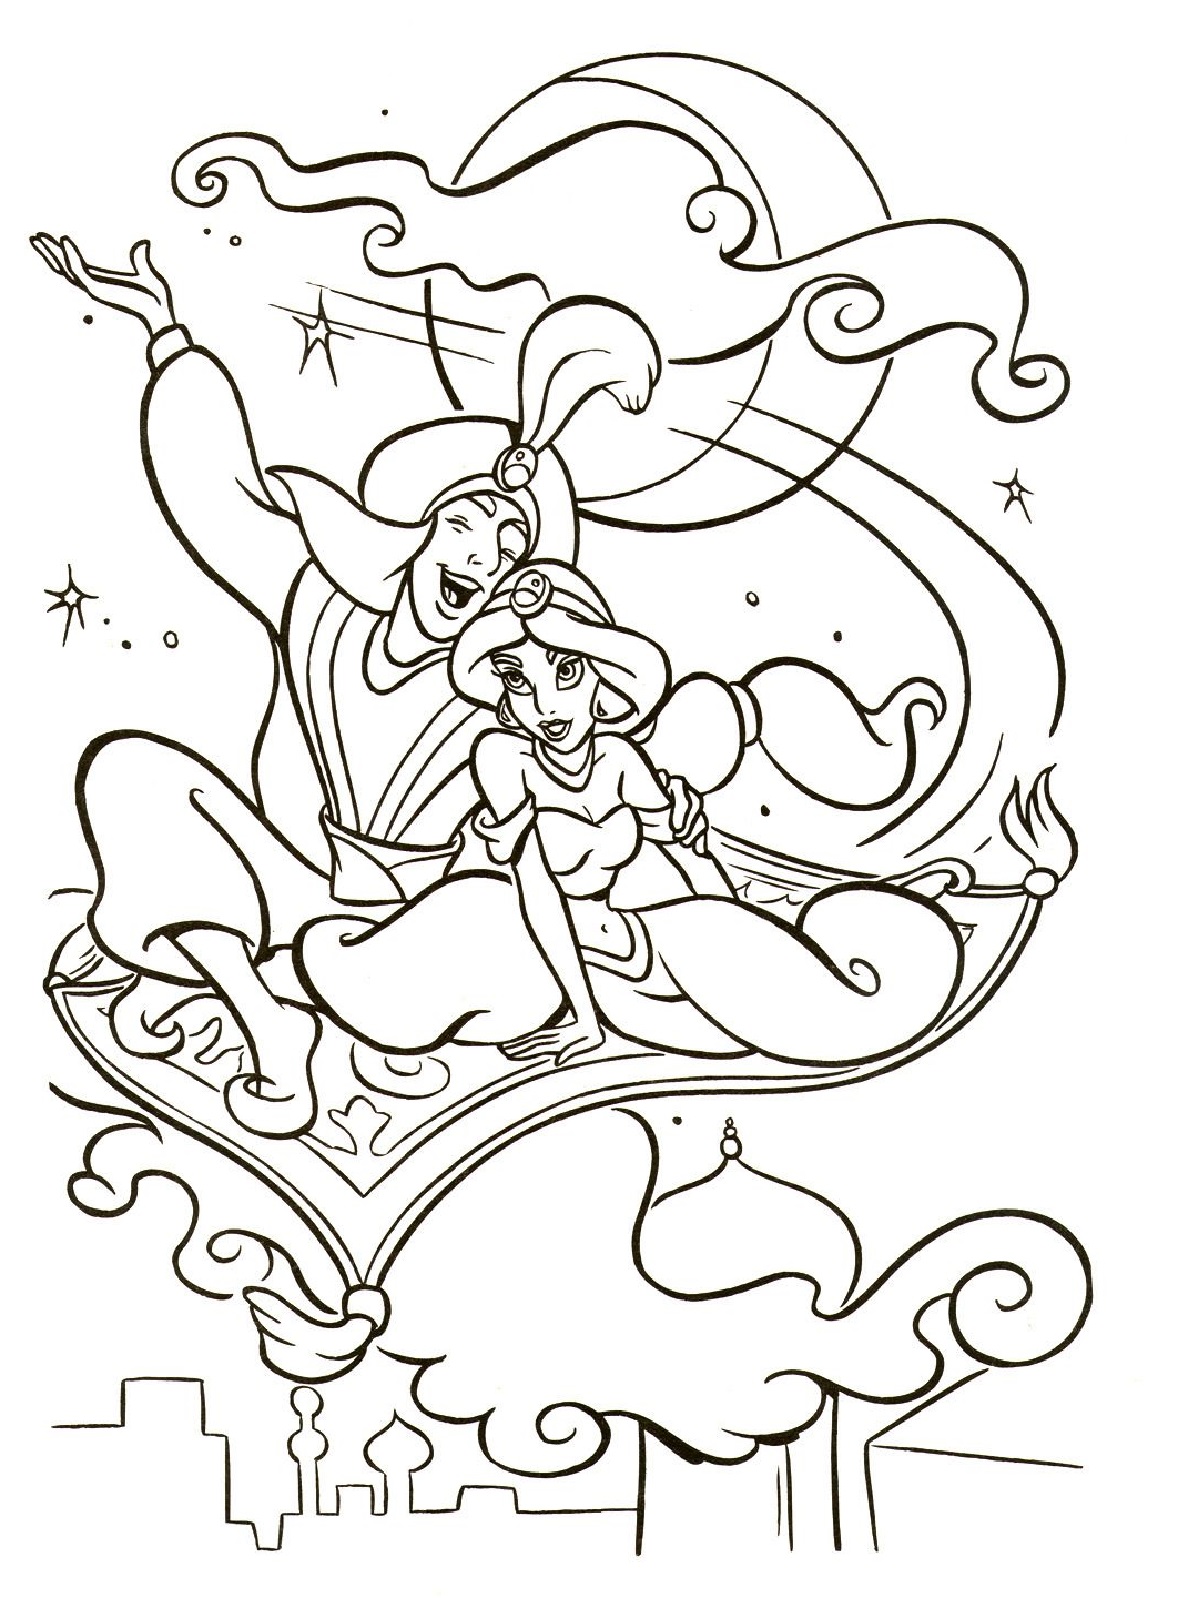 Aladdin and Jasmine Coloring Page for Kids Printable - SheetalColor.com